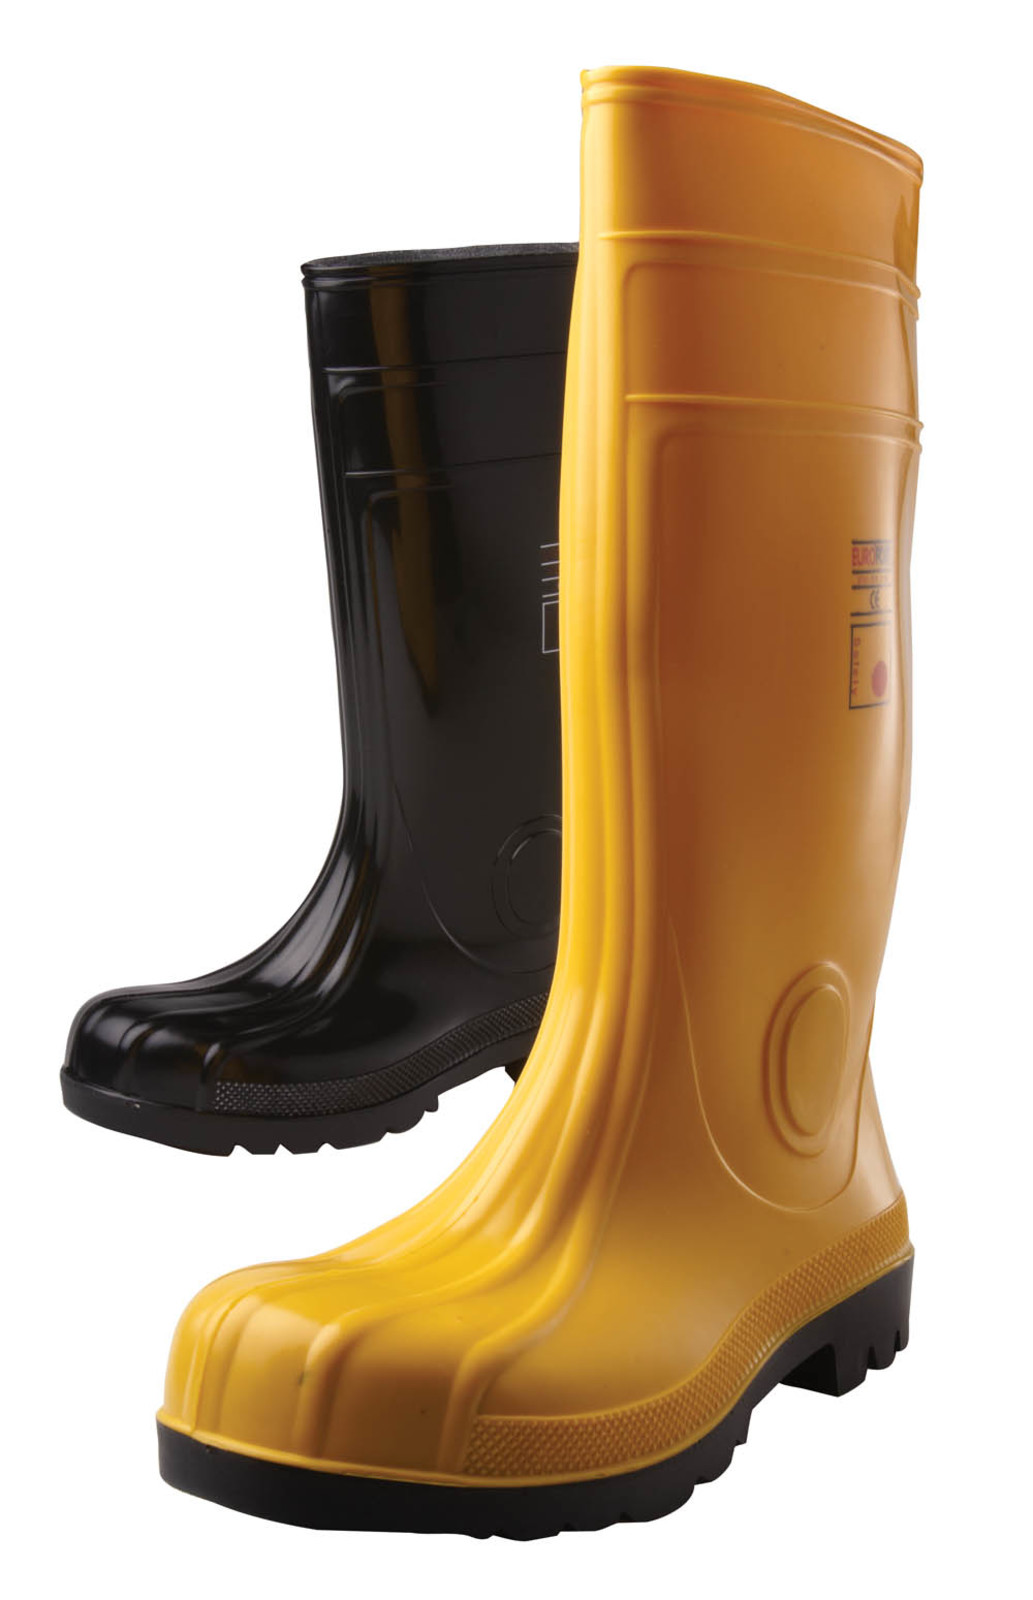 Gumáky Boots Eurofort  S5 - veľkosť: 40, farba: čierna